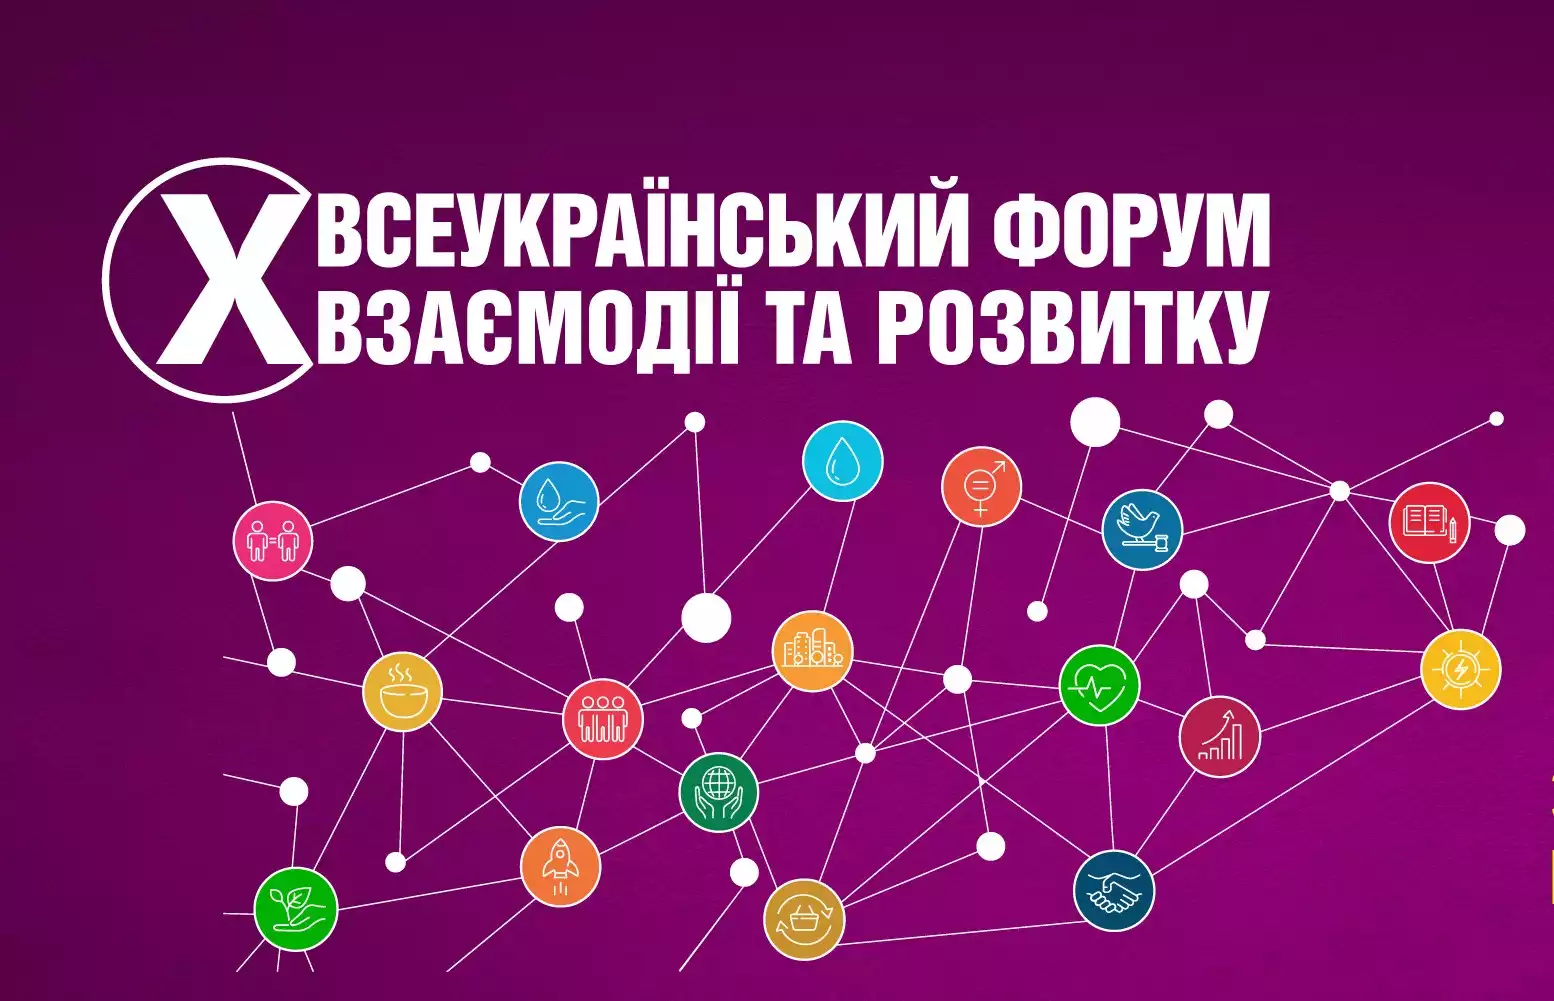 Триває реєстрація на X Всеукраїнський форум взаємодії та розвитку